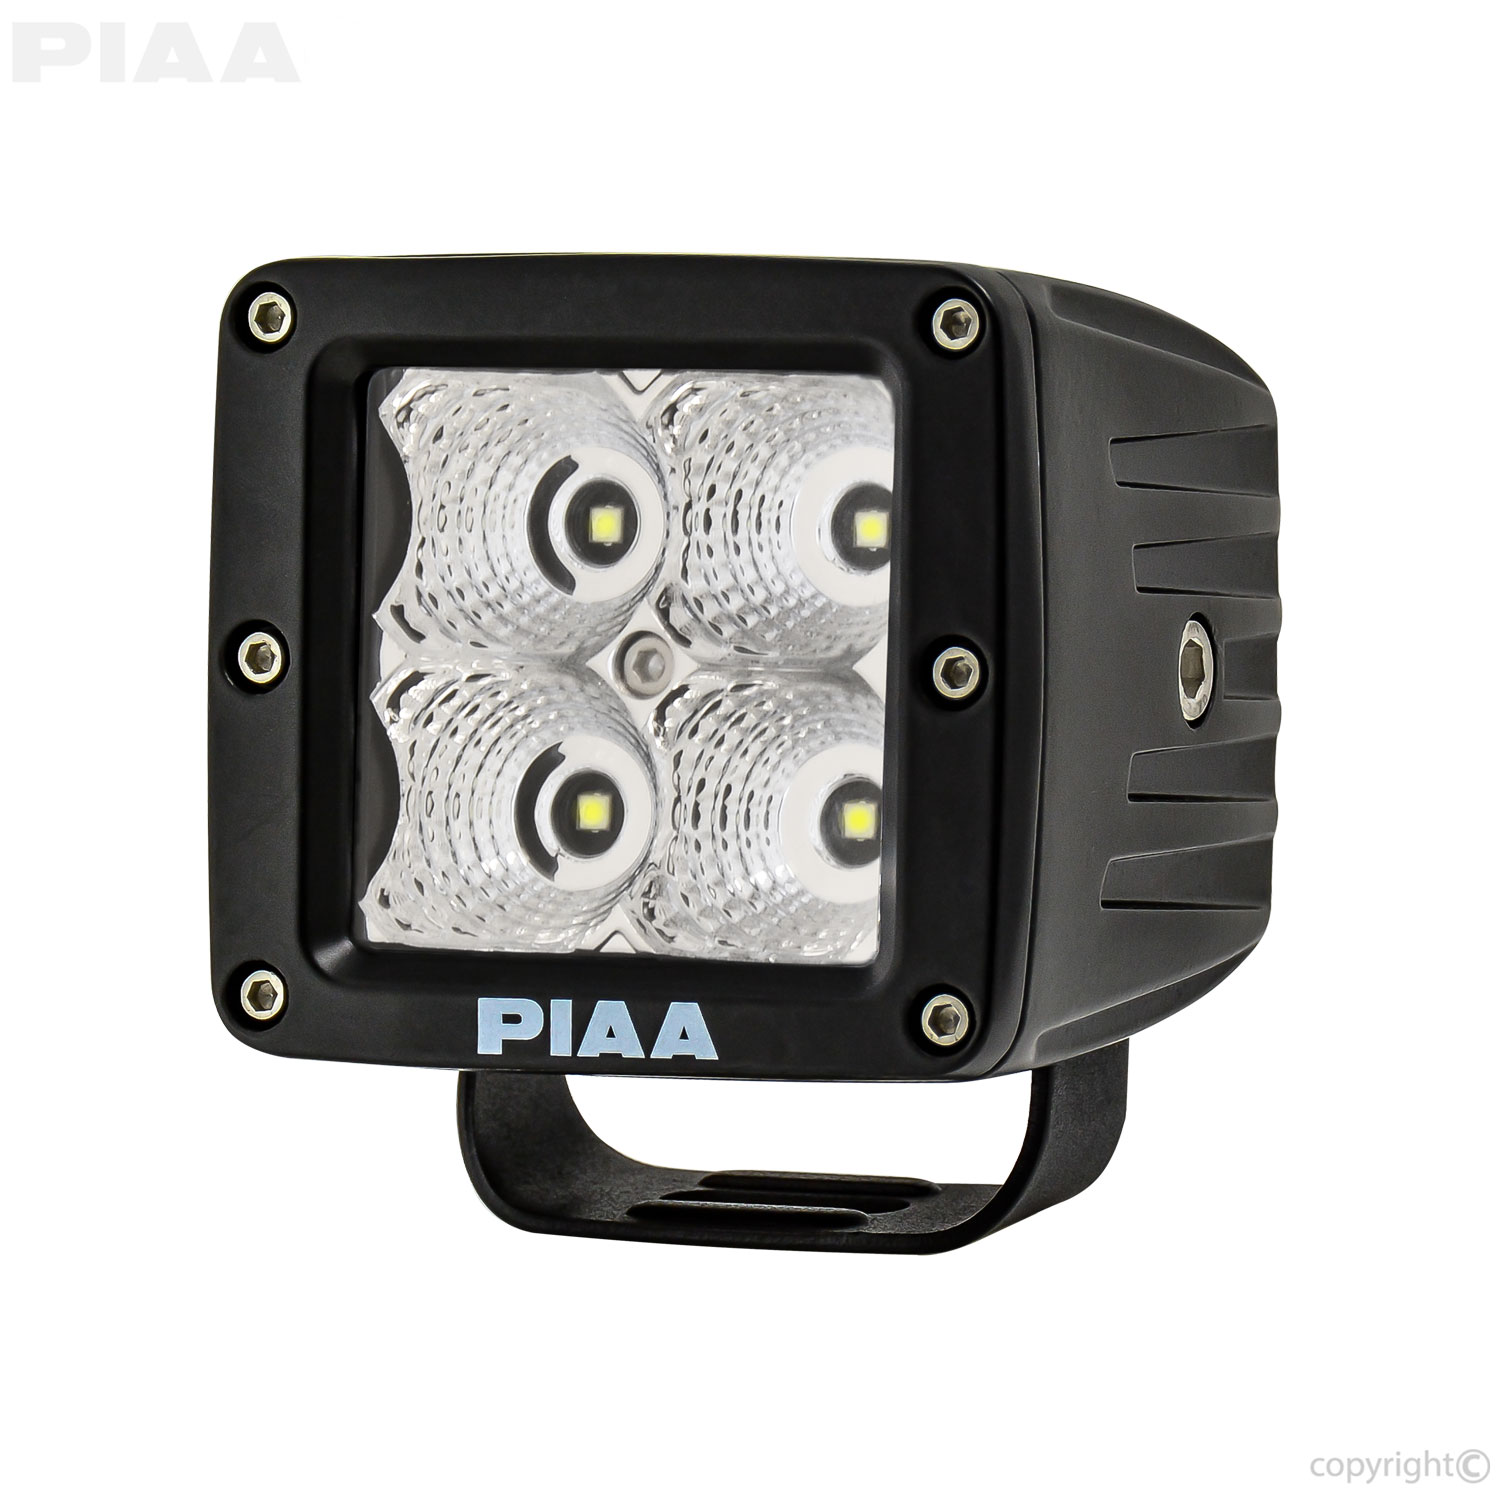 PIAA Quad Cube LED Flood Light